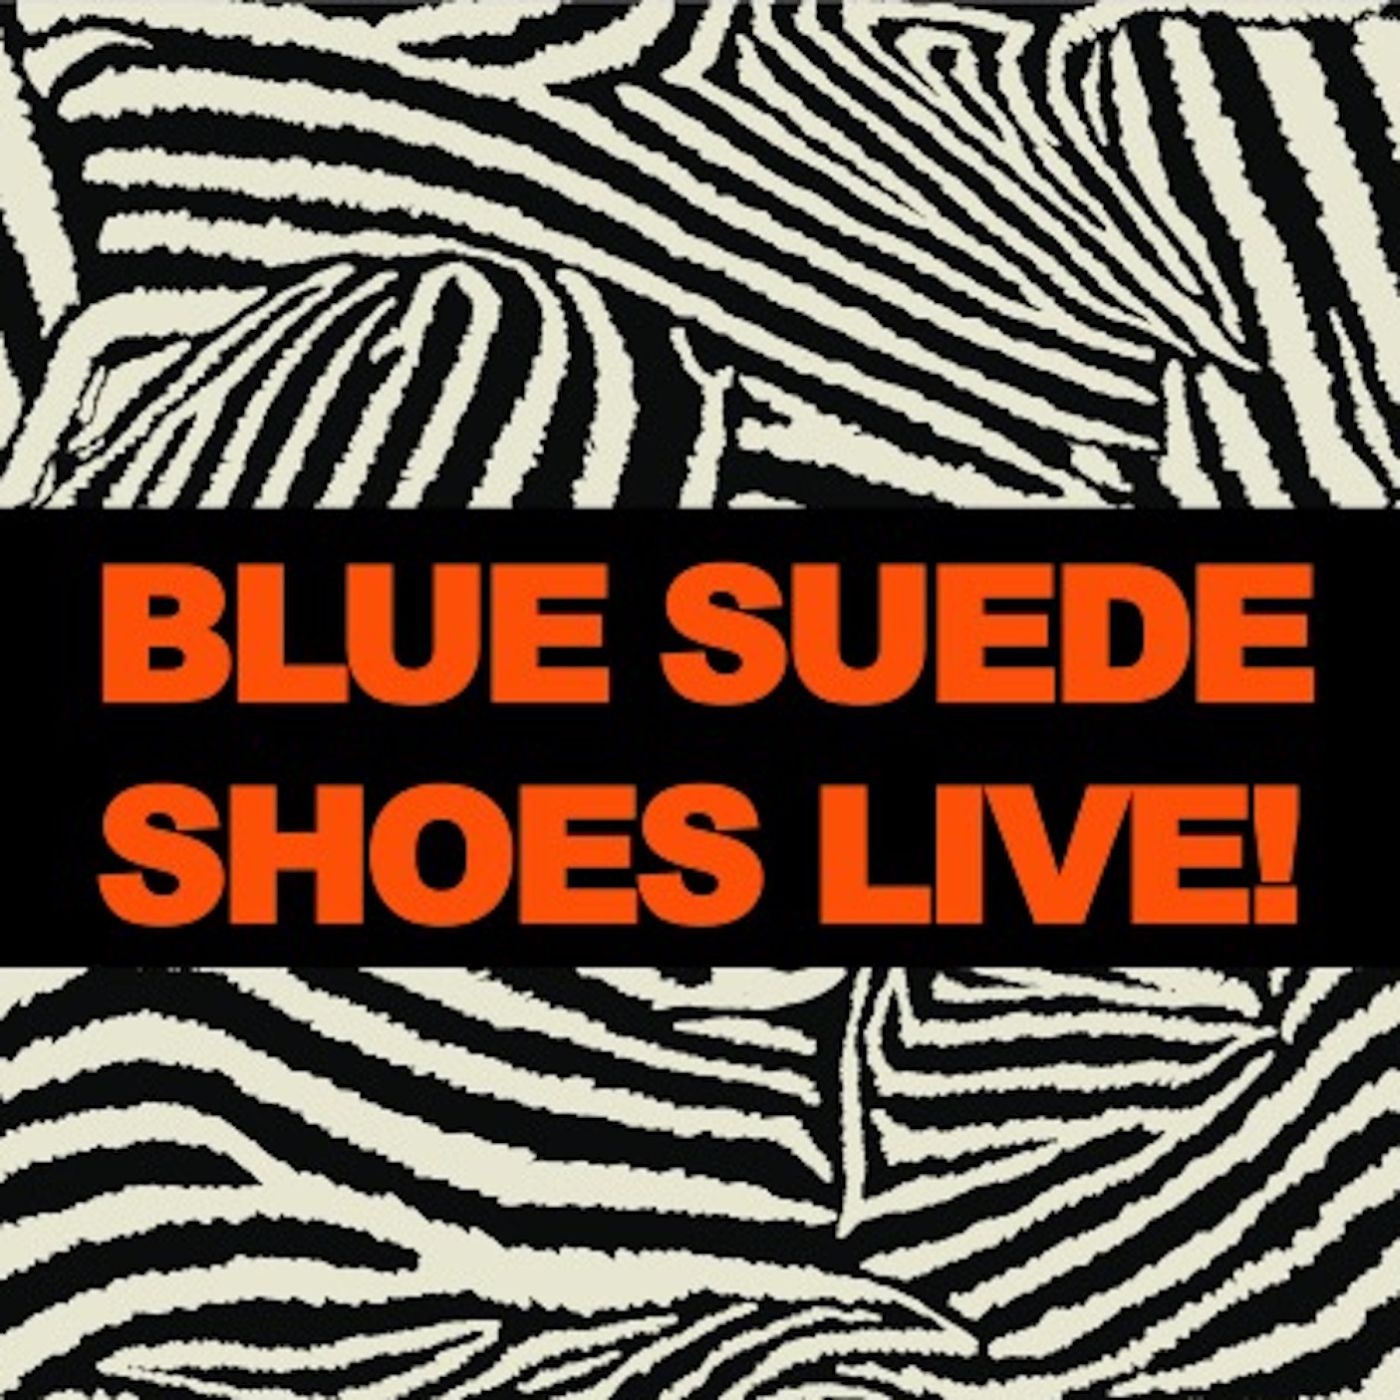 Blue Suede Shoes Live!